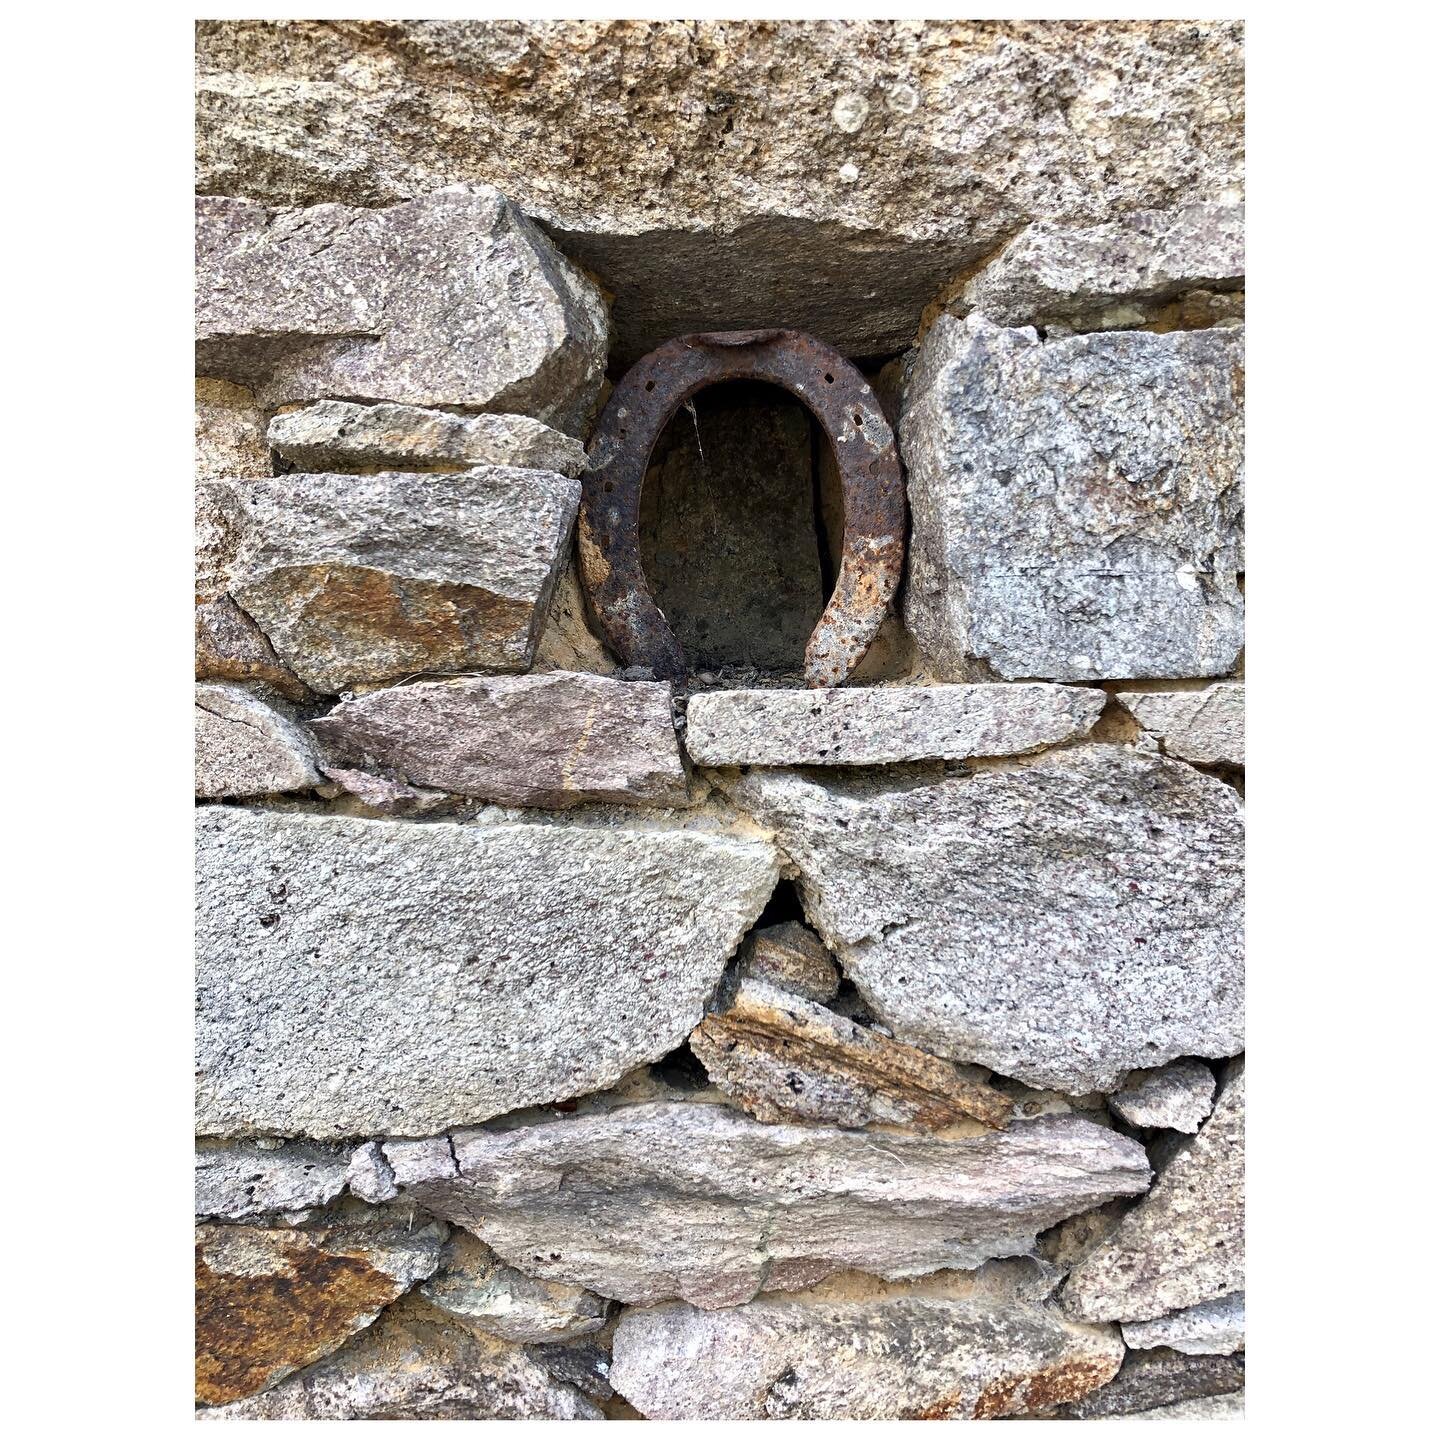 Stroke of luck 🍀
&bull;&bull;
#feracheval #portebonheur #house #bretagne #goodluck #stone #stonearchitecture